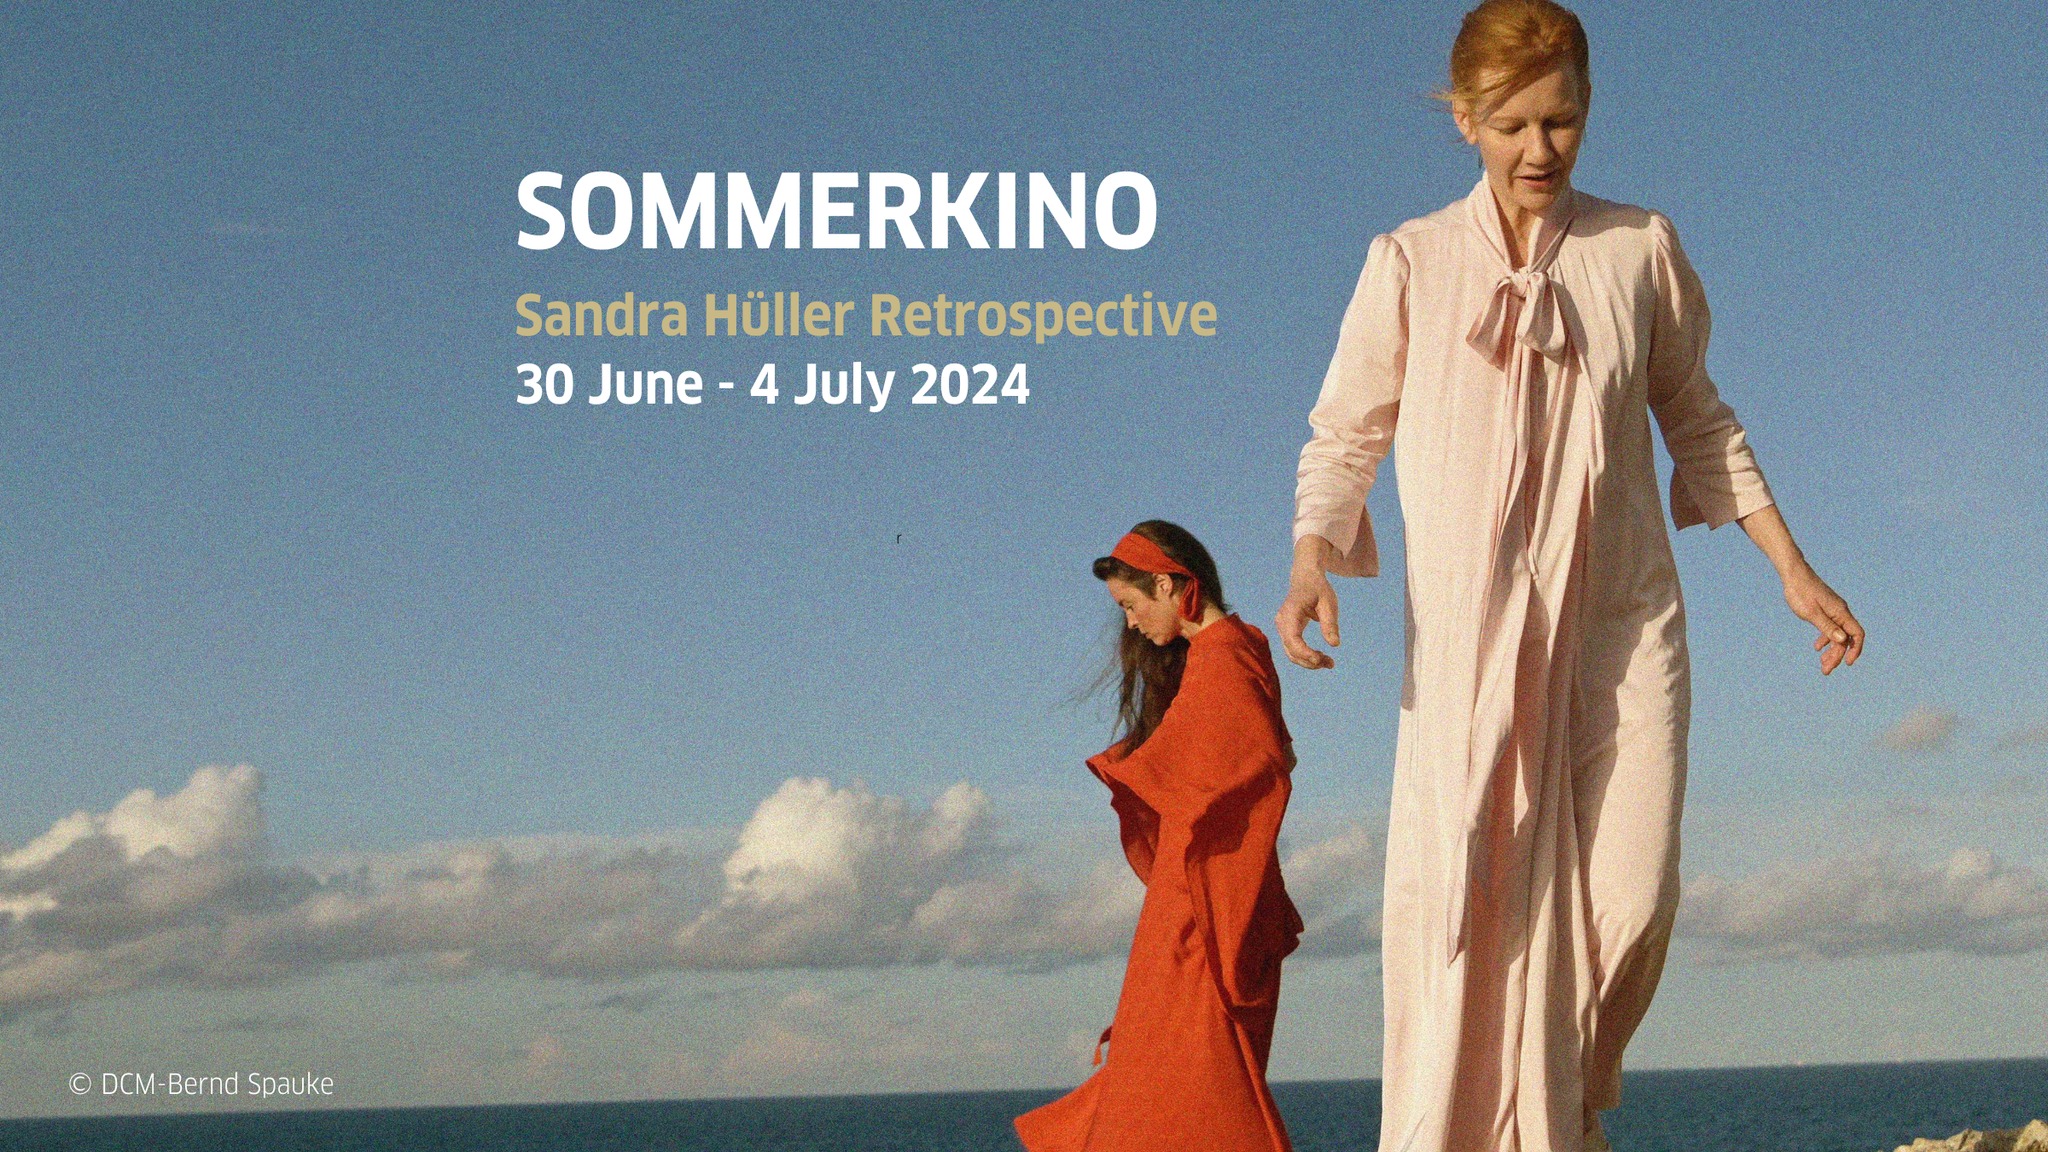 Sumerkino kehrt zurück und zeigt deutsche Filme